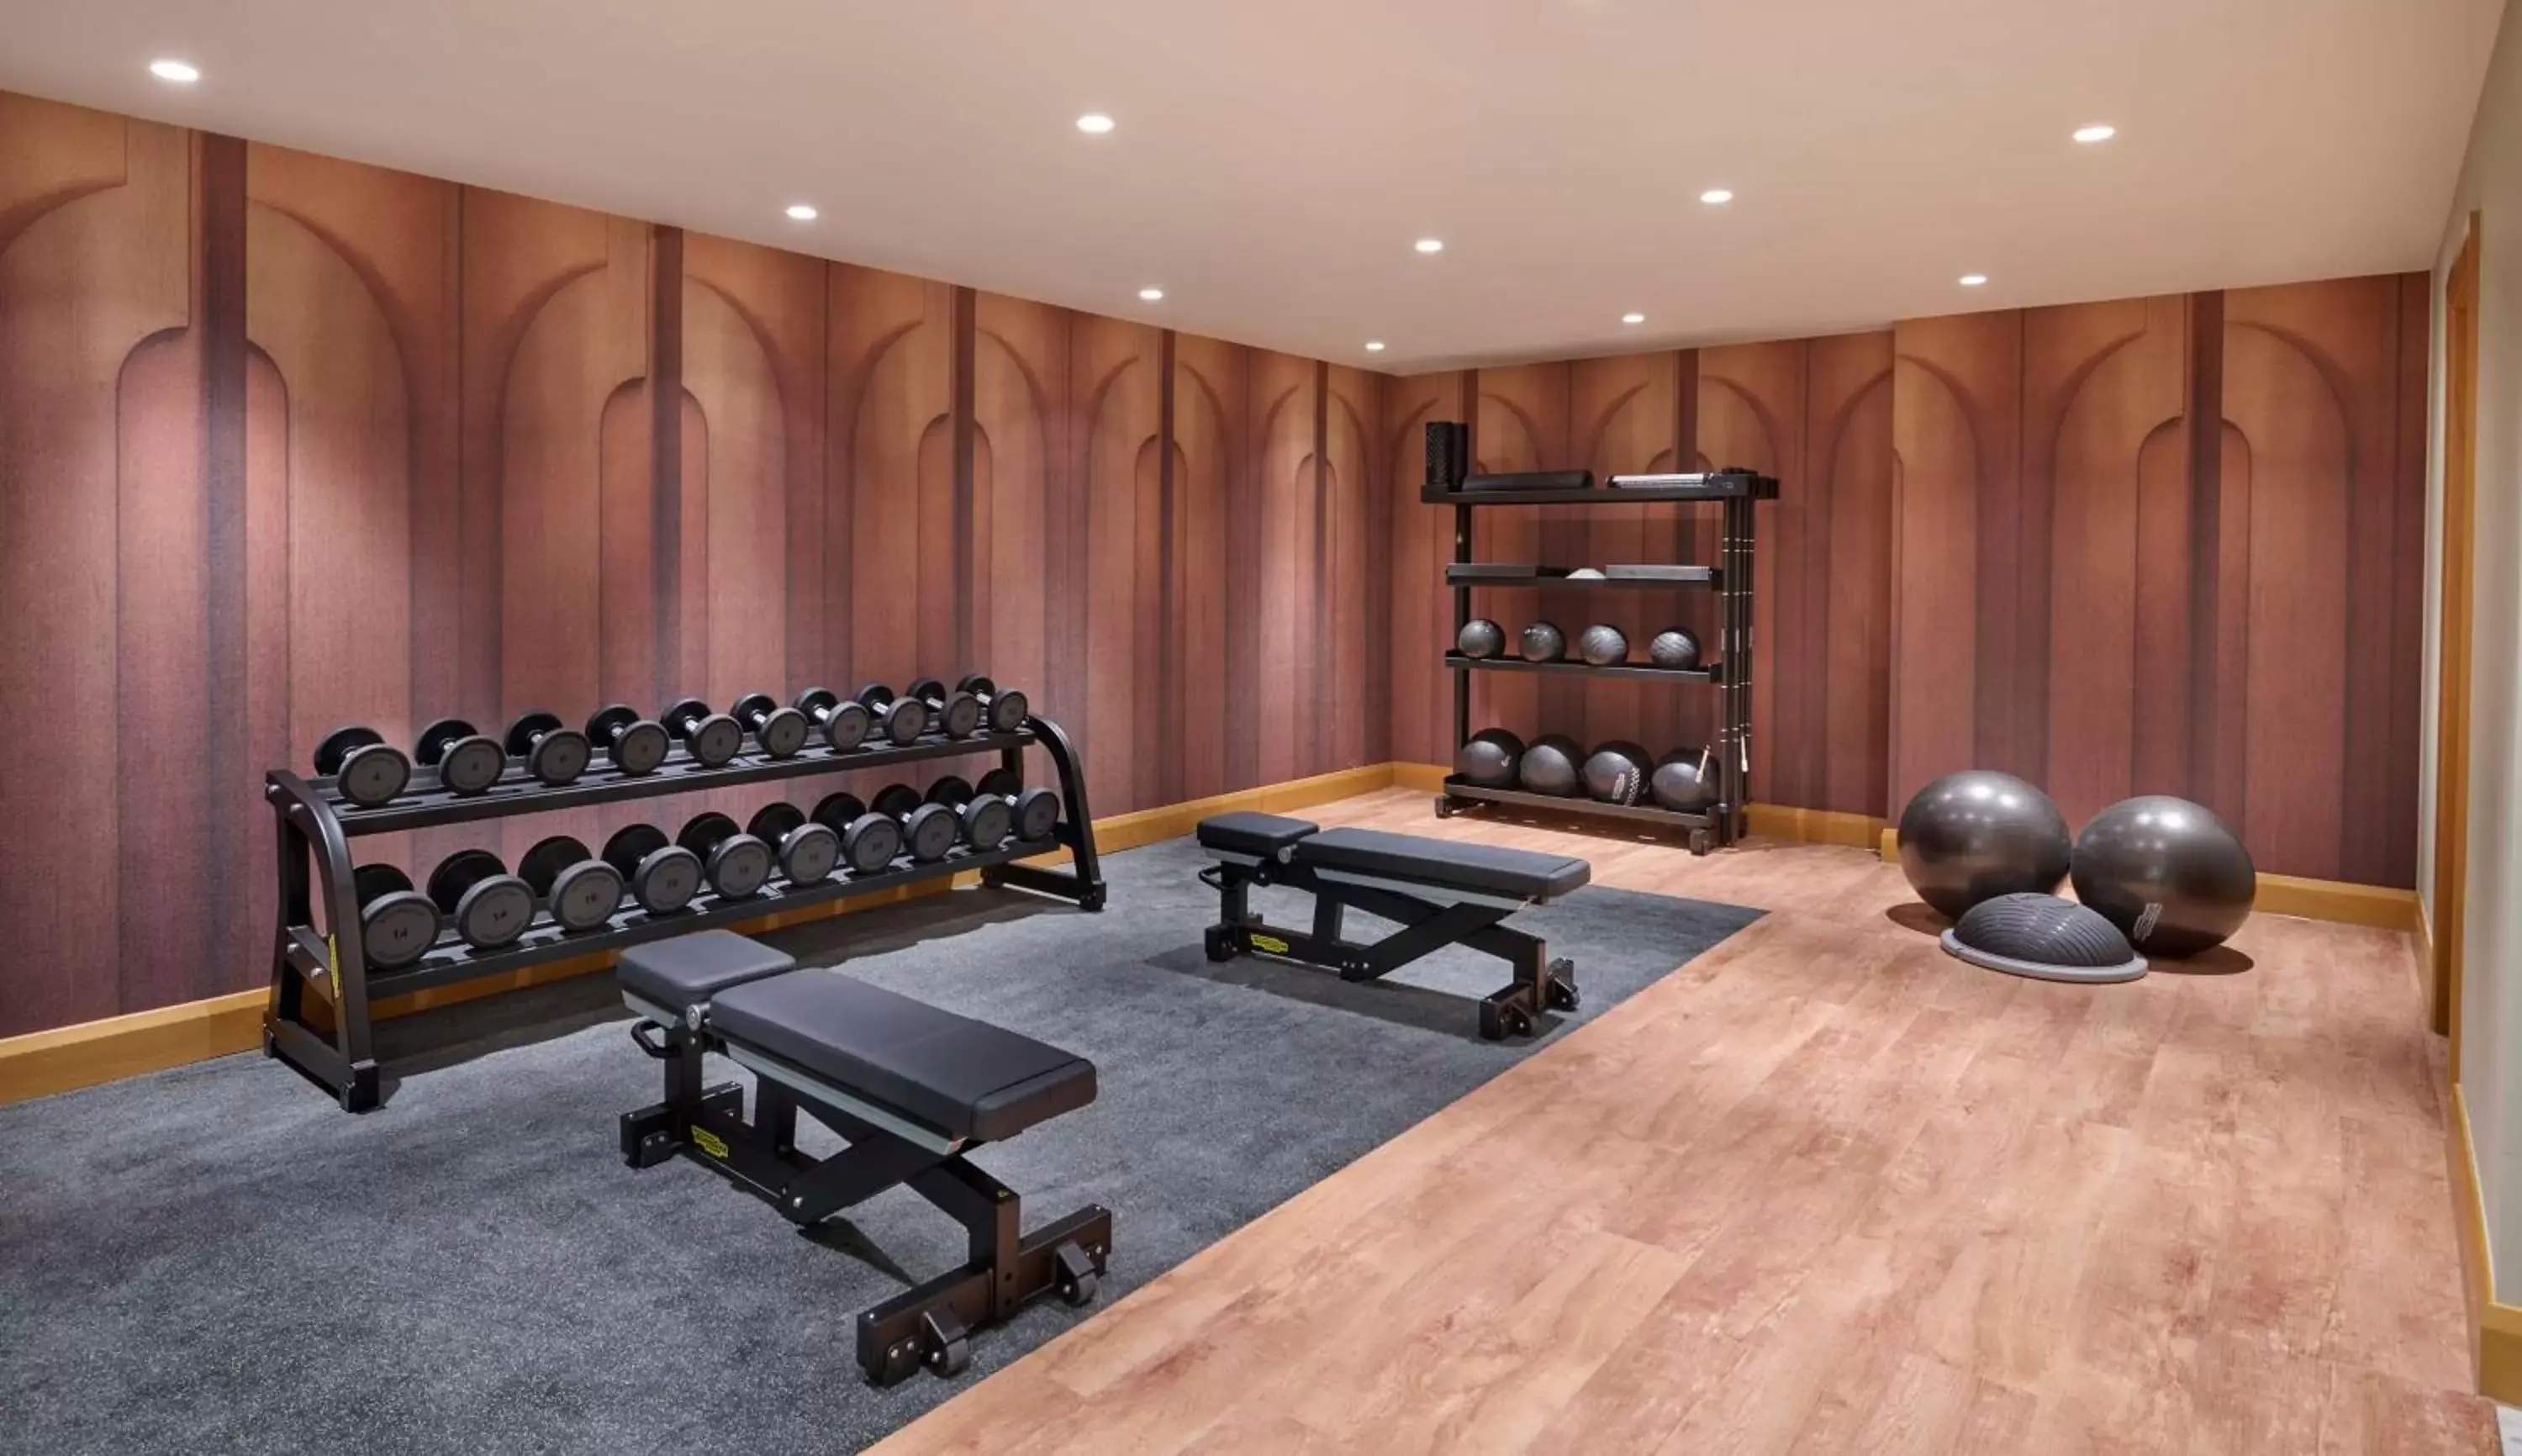 Fitness centre/facilities, Fitness Center/Facilities in Hyatt Regency London Blackfriars